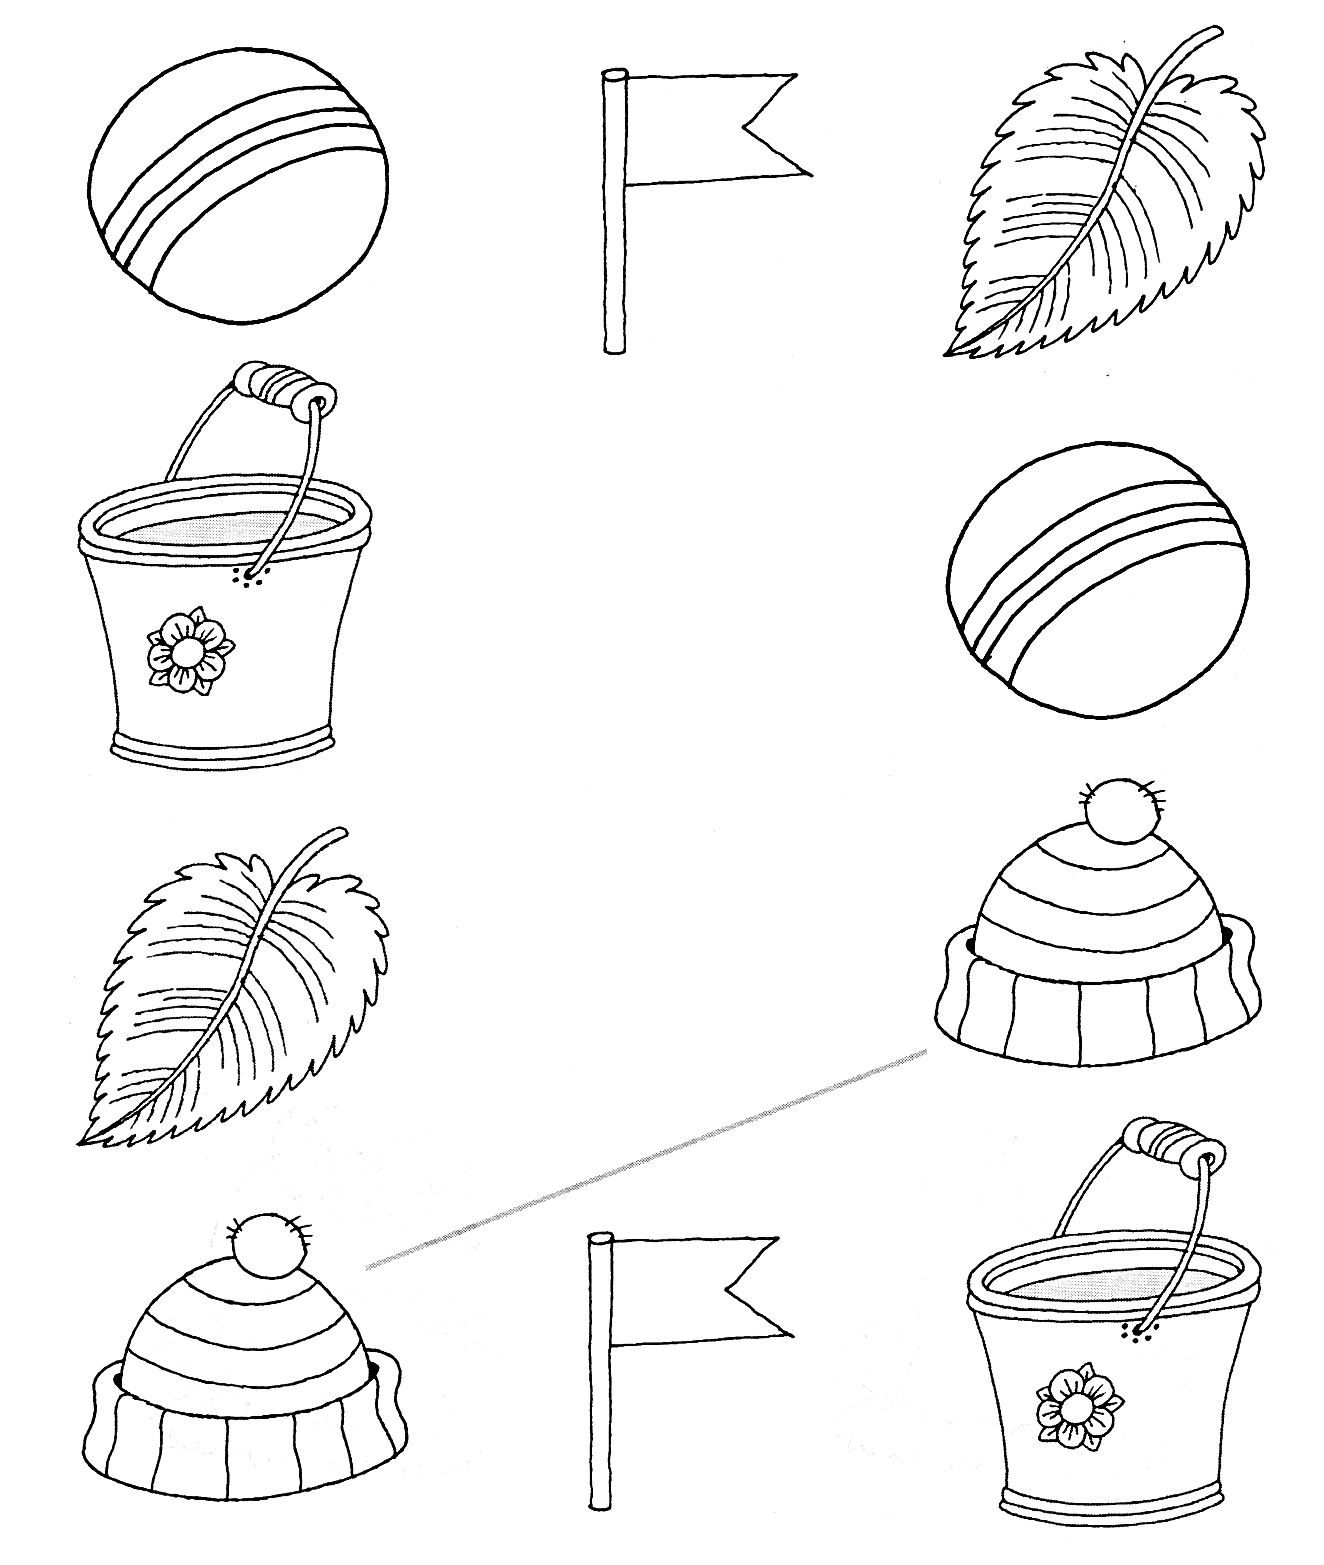 Логическая раскраска с мячами, флагами, листьями, ведрами и шапками